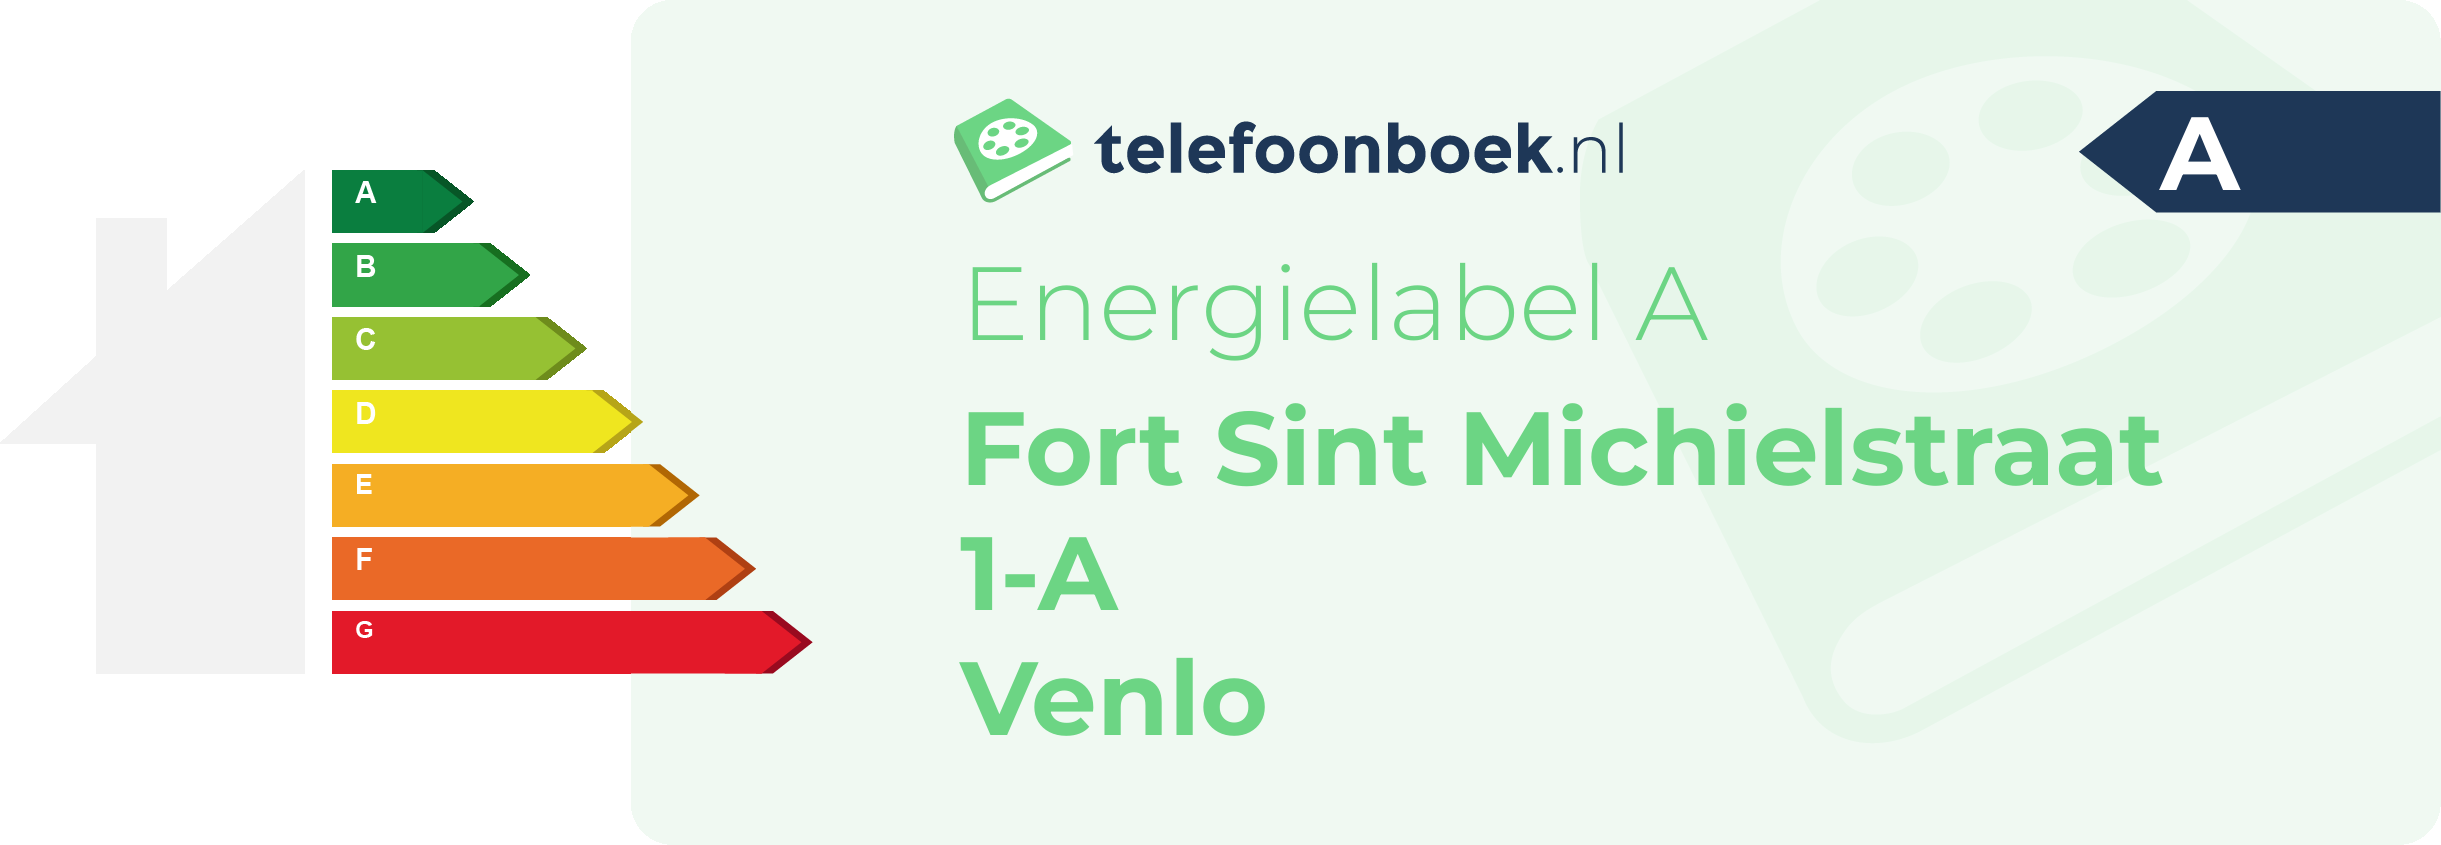 Energielabel Fort Sint Michielstraat 1-A Venlo